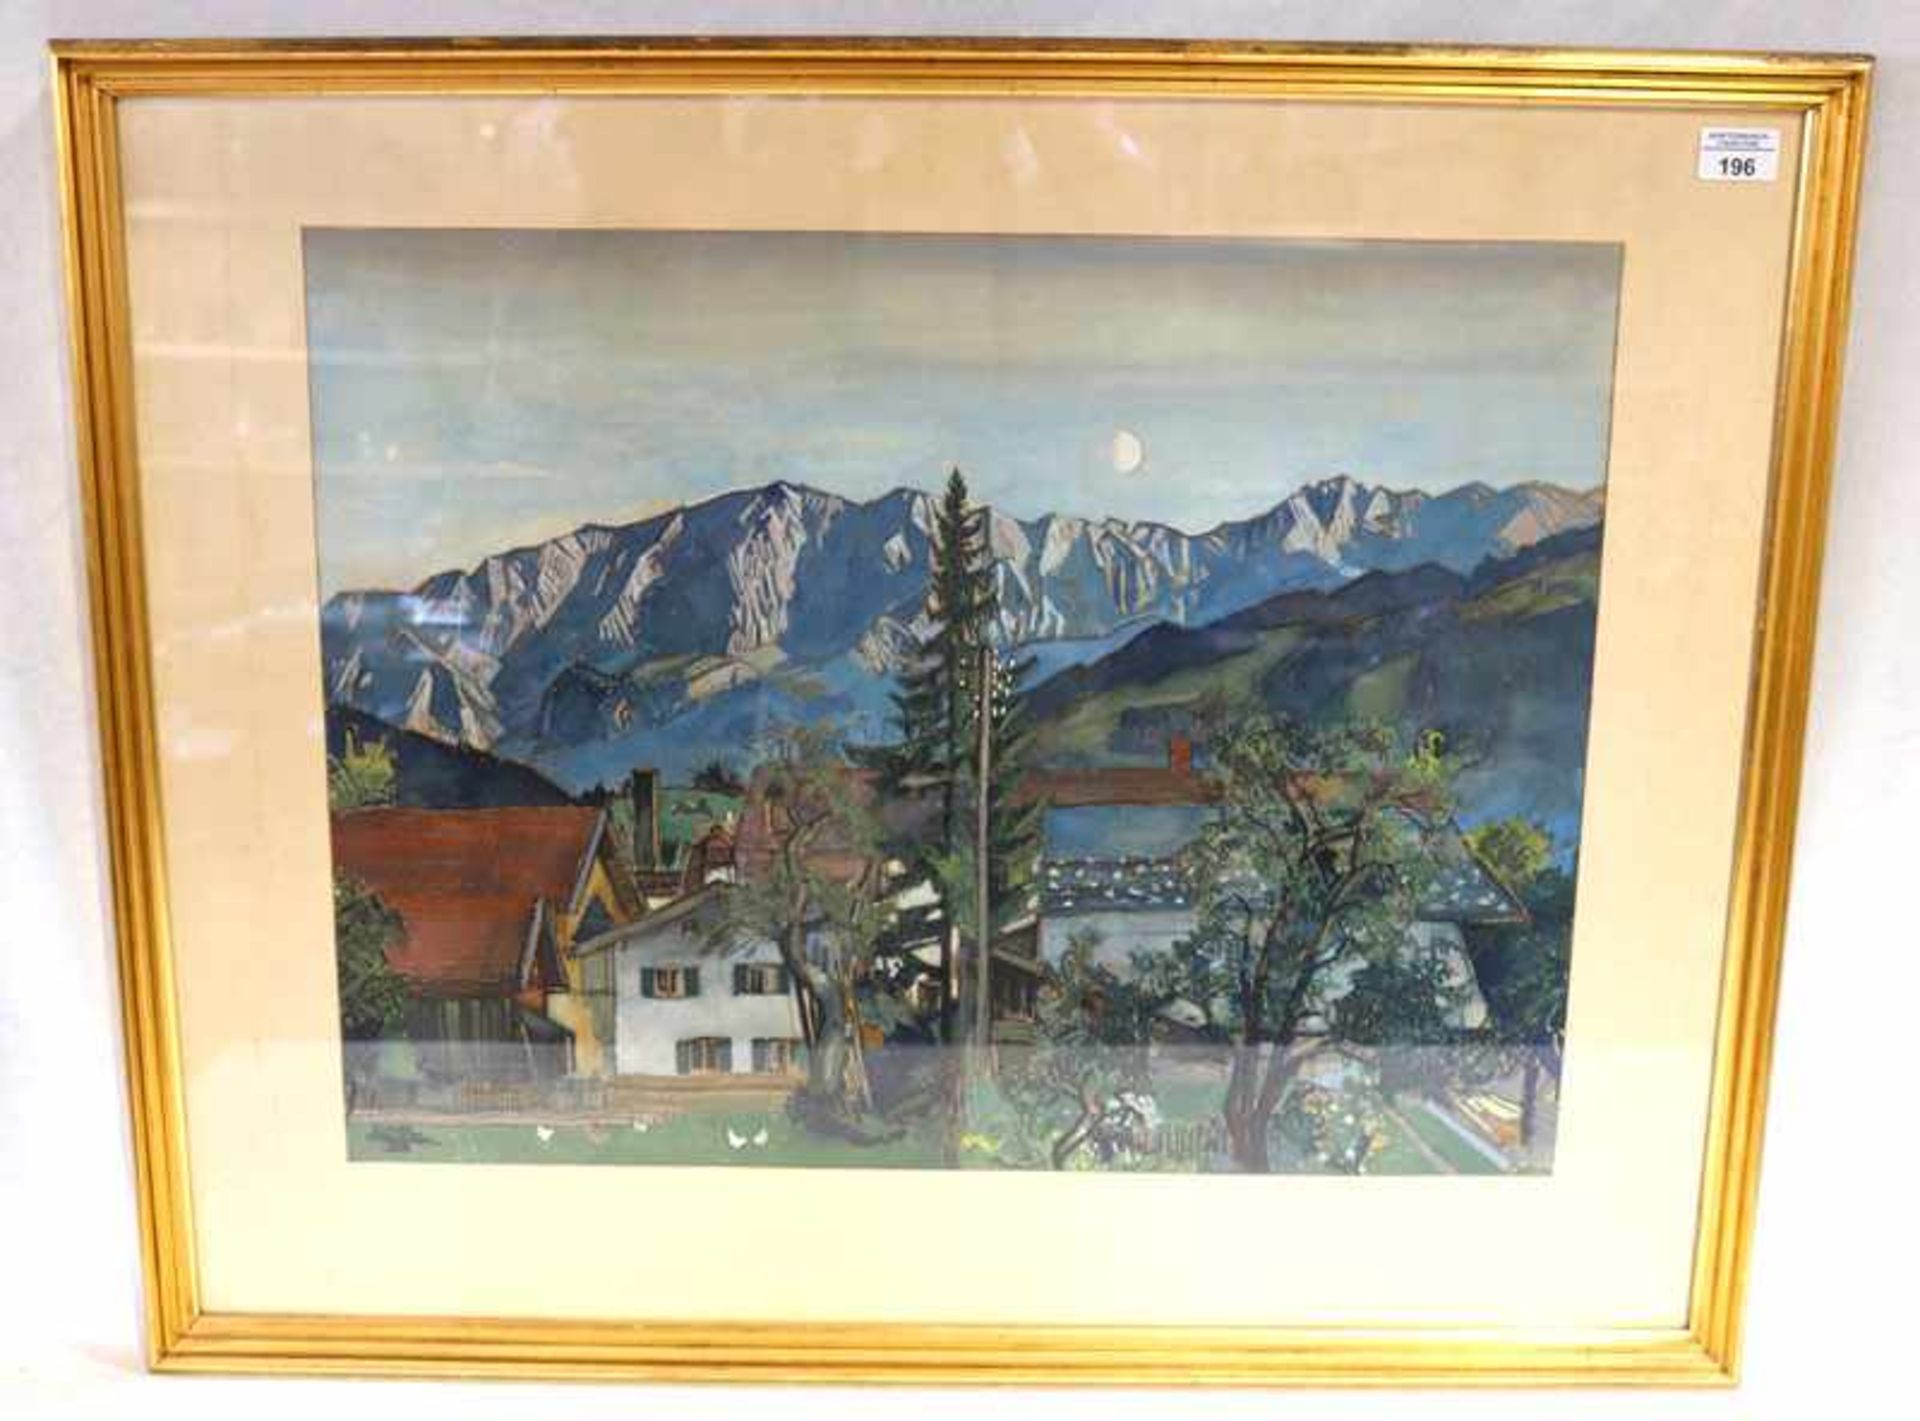 Gemälde Mischtechnik 'Bauernhäuser vor Dreitorspitze', signiert Carl Reiser, datiert 33, * 1877